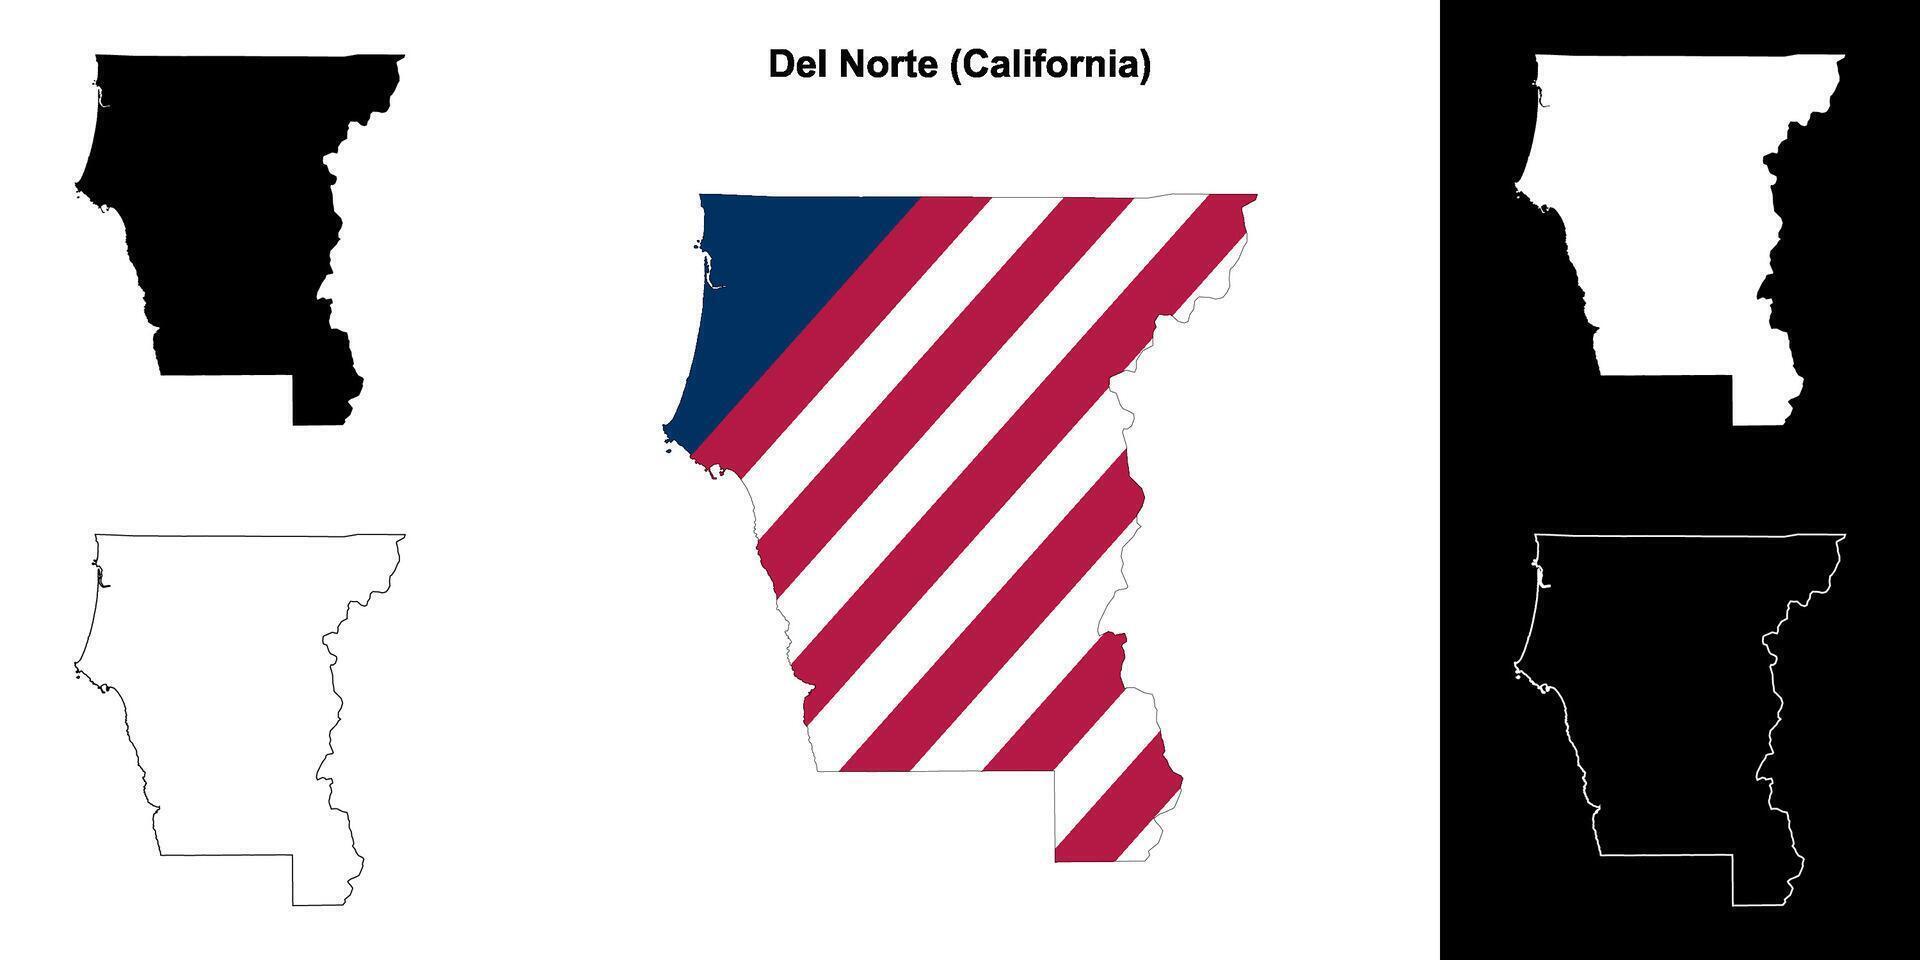 del norte condado, California contorno mapa conjunto vector